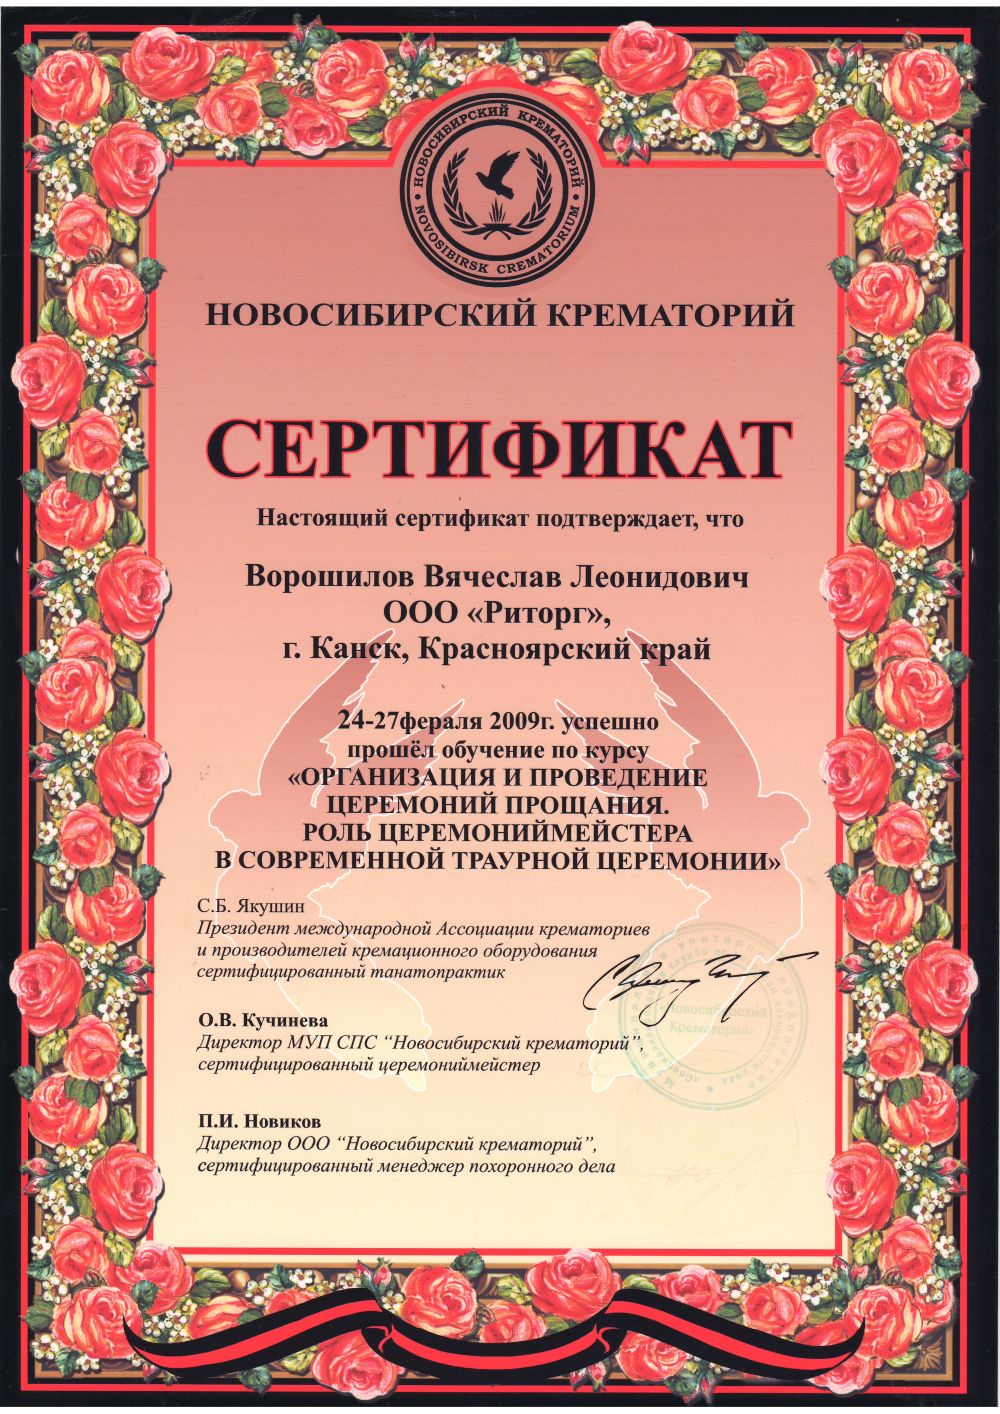 Сертификат о прохождении обучения на курсе «Организация и проведение церемоний прощания. Роль церемониймейстера в современной траурной церемонии»